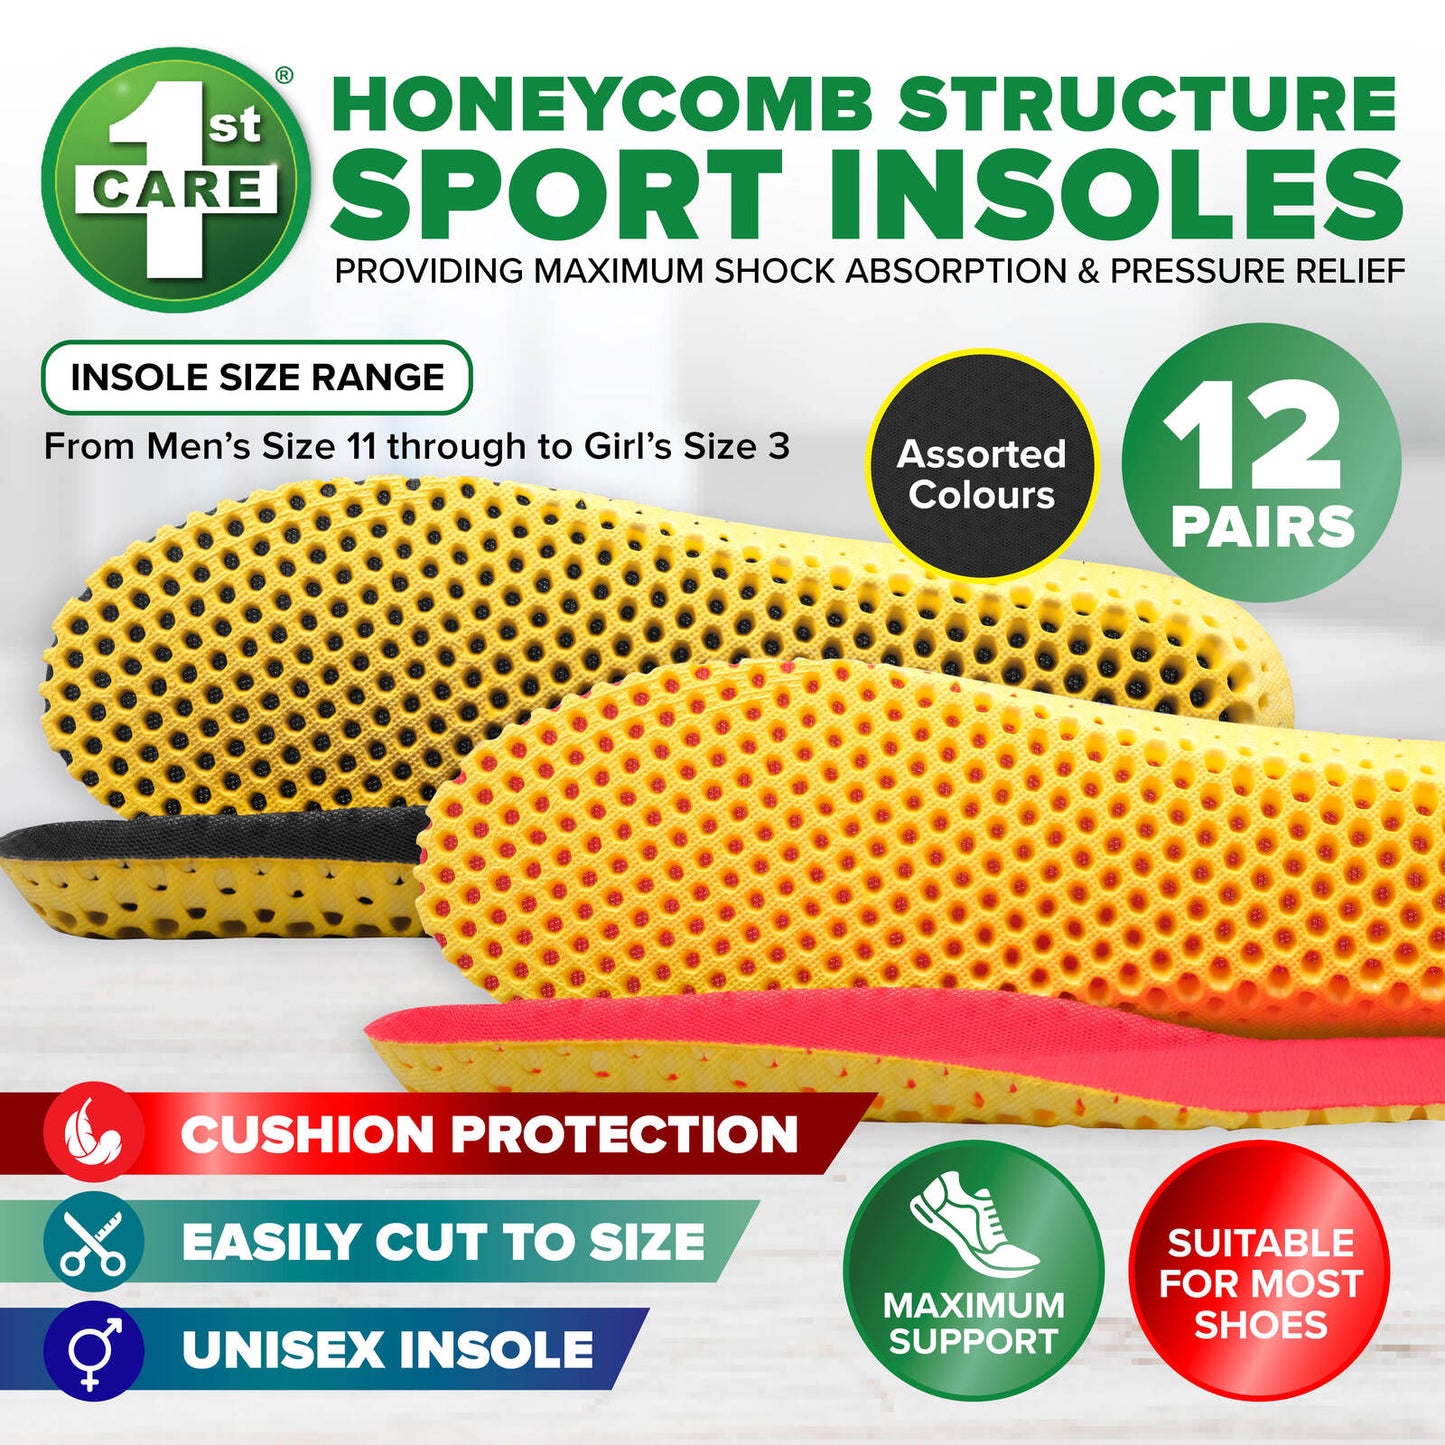 1st Care 12 Pairs Unisex Honeycomb Design Sport Insoles Maximum Support